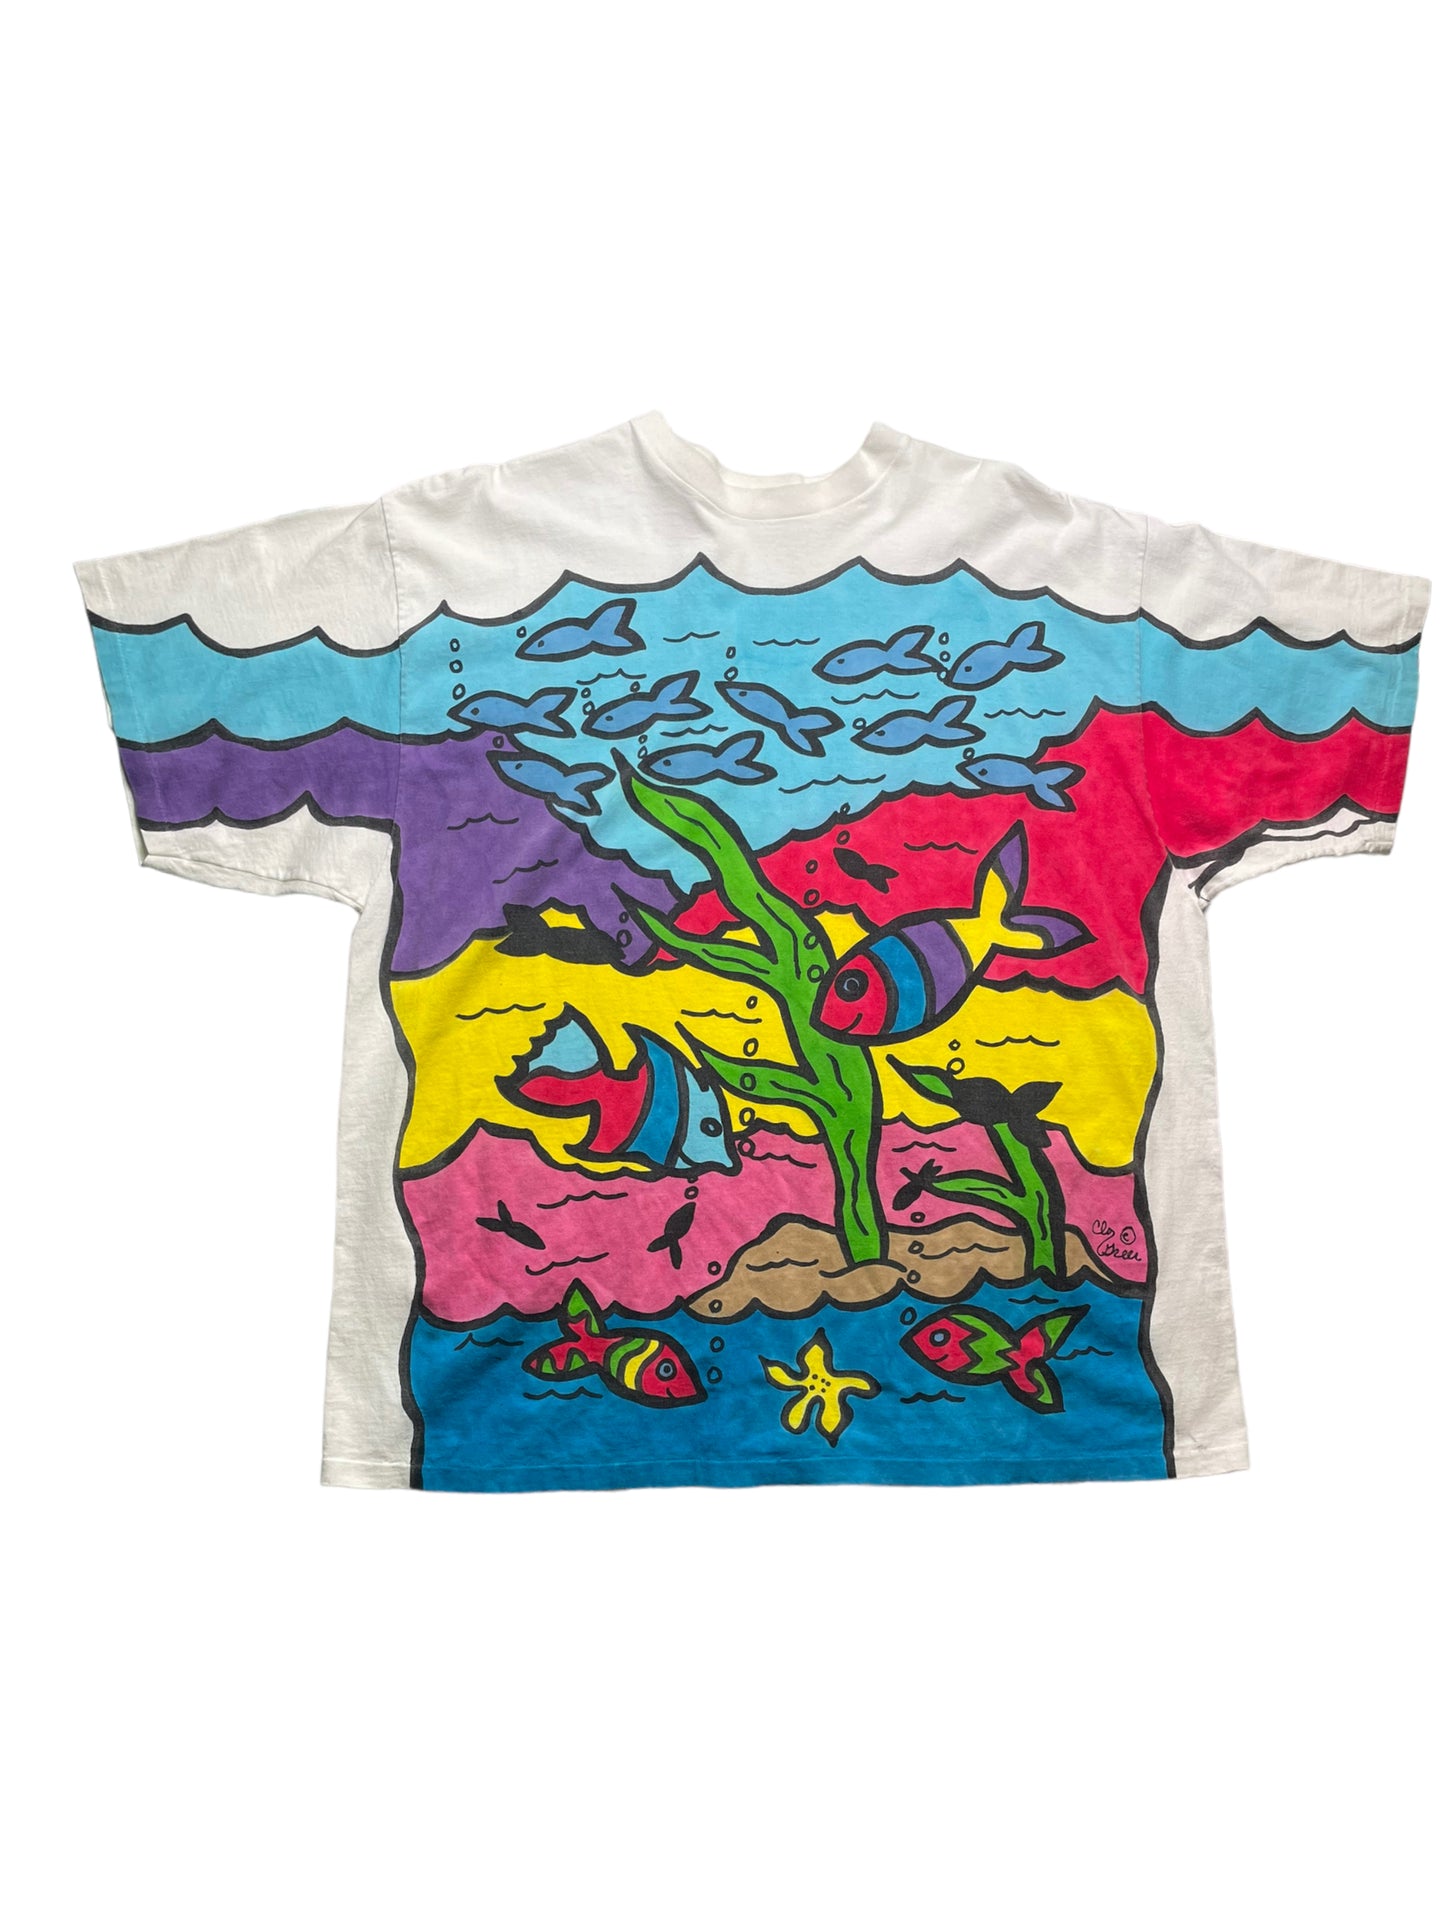 Vintage Single Stitch Under the Ocean Art Tshirt XXL